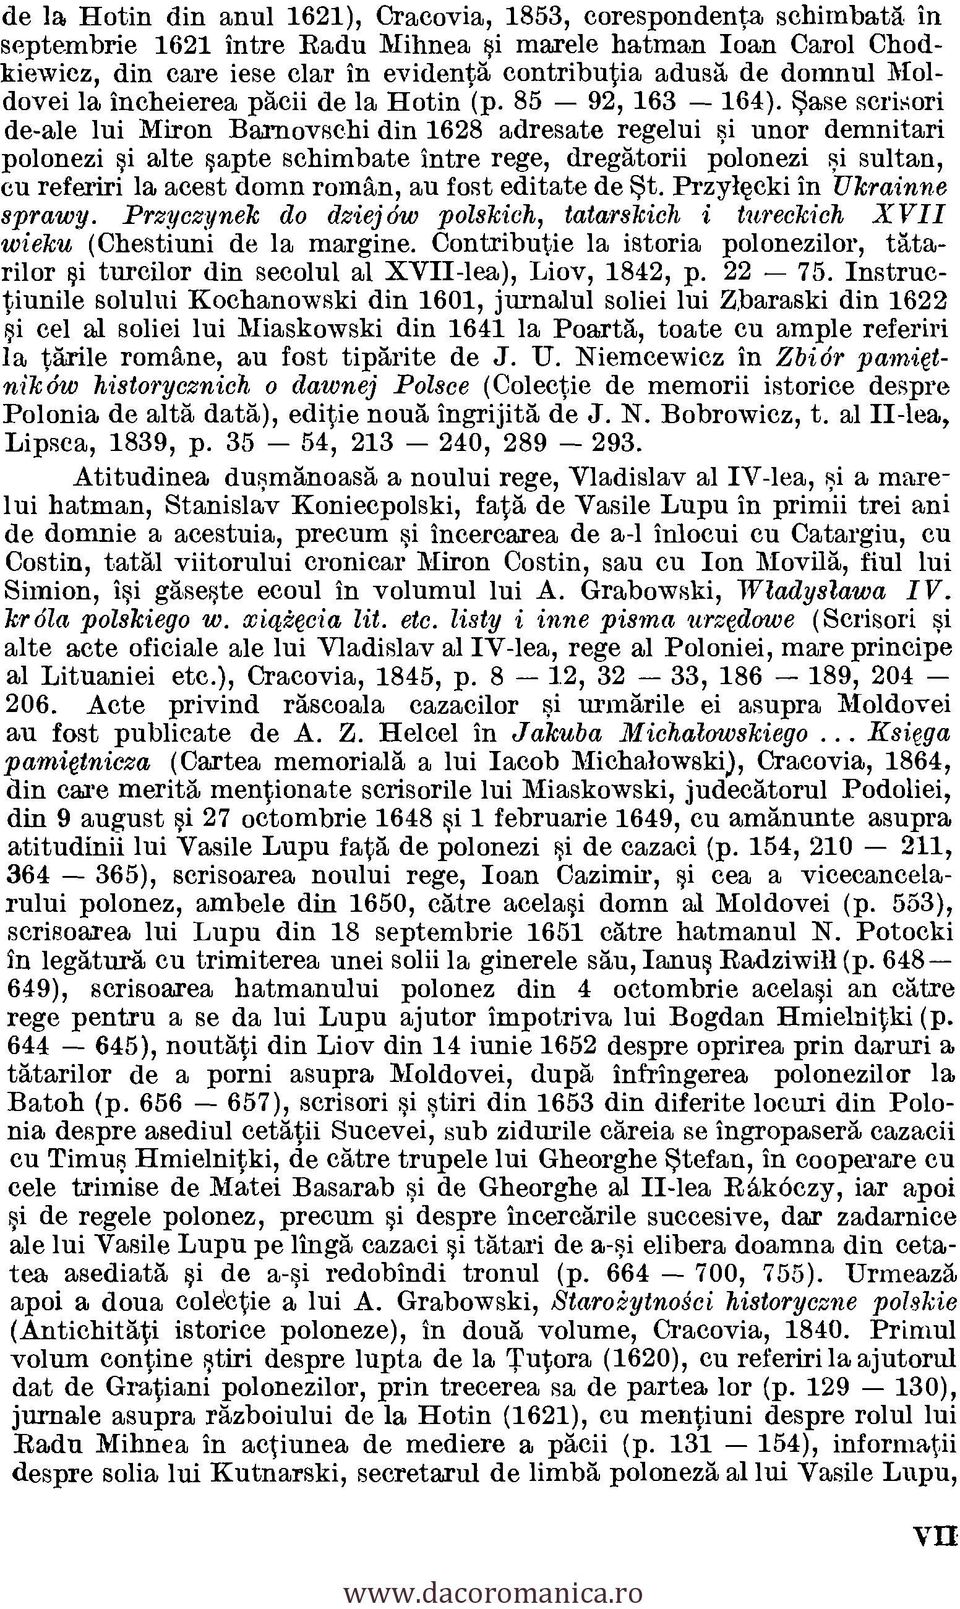 Sase scrisori de-ale lui Miron Barnovschi din 1628 adresate regelui si unor demnitari polonezi si alte sapte schimbate intre rege, dregatorii polonezi si sultan, cu referiri la acest domn roman, an